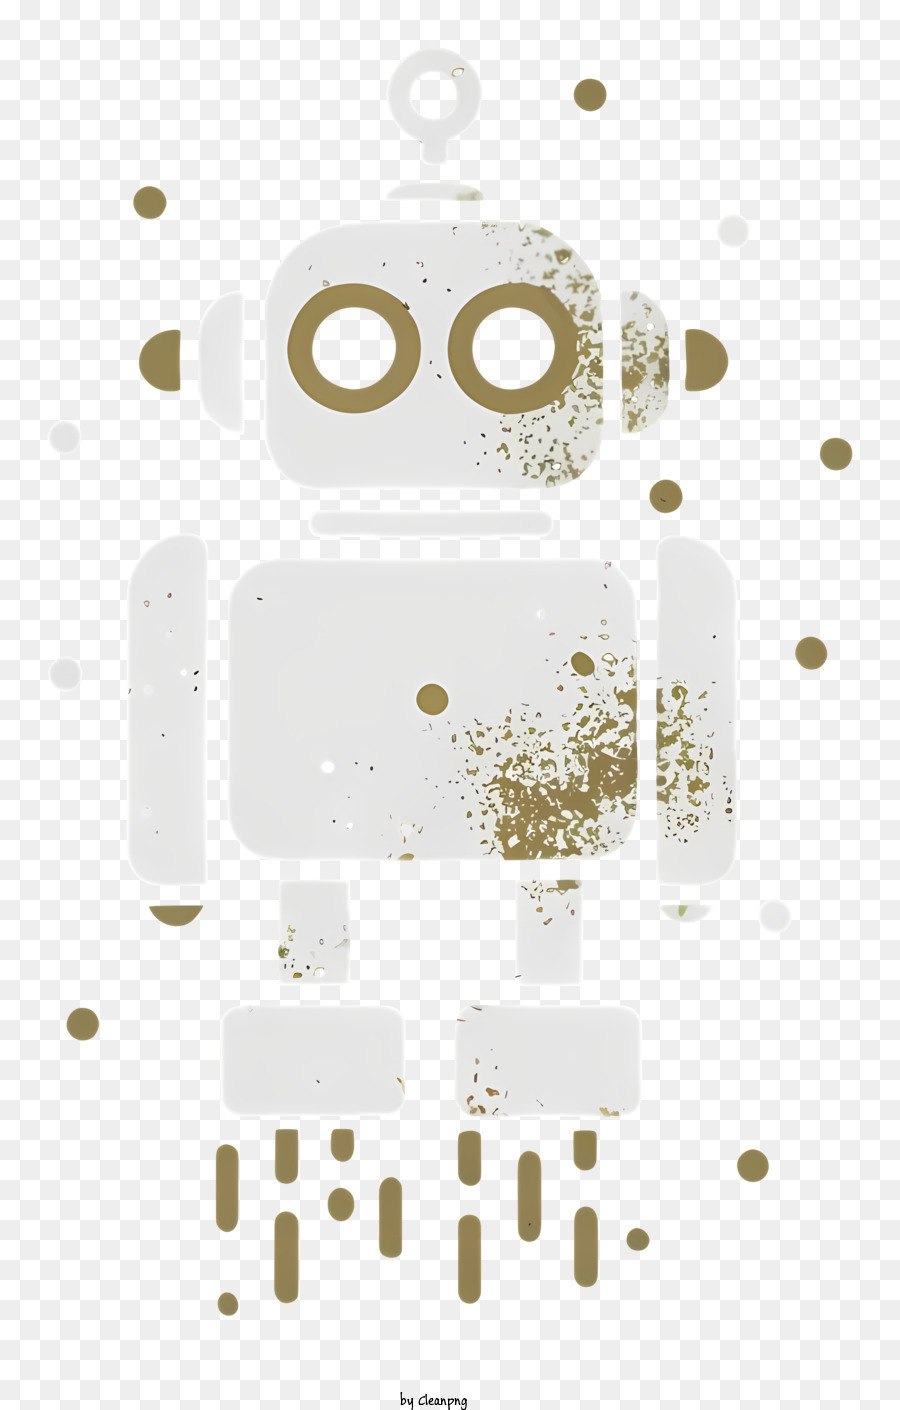 Phim hoạt hình Robot Curious Biểu hiện hai chân ra dang ra - Robot tò mò trong áo sơ mi trắng với cánh tay dang ra